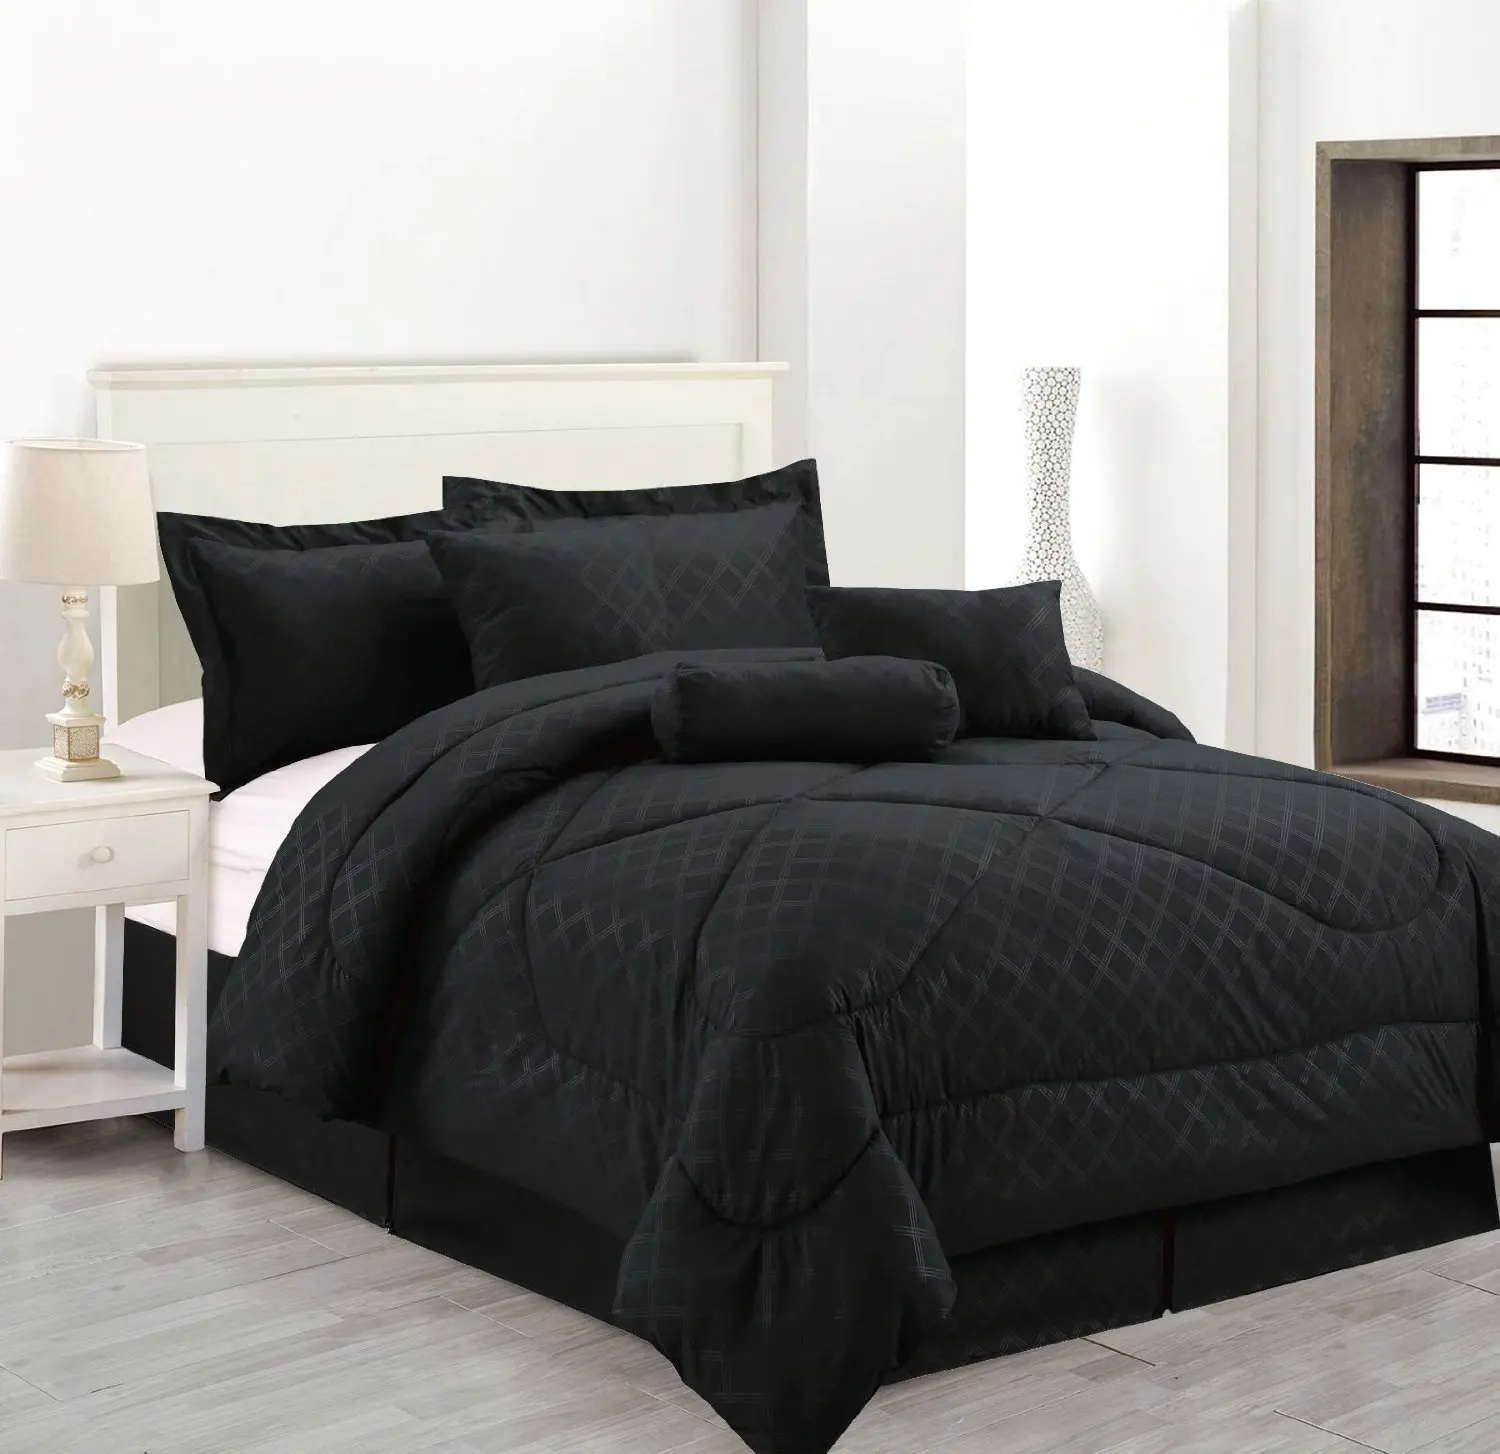 Cheap Solid Black Comforter Set Find Solid Black Comforter Set Deals On Line At Alibaba Com